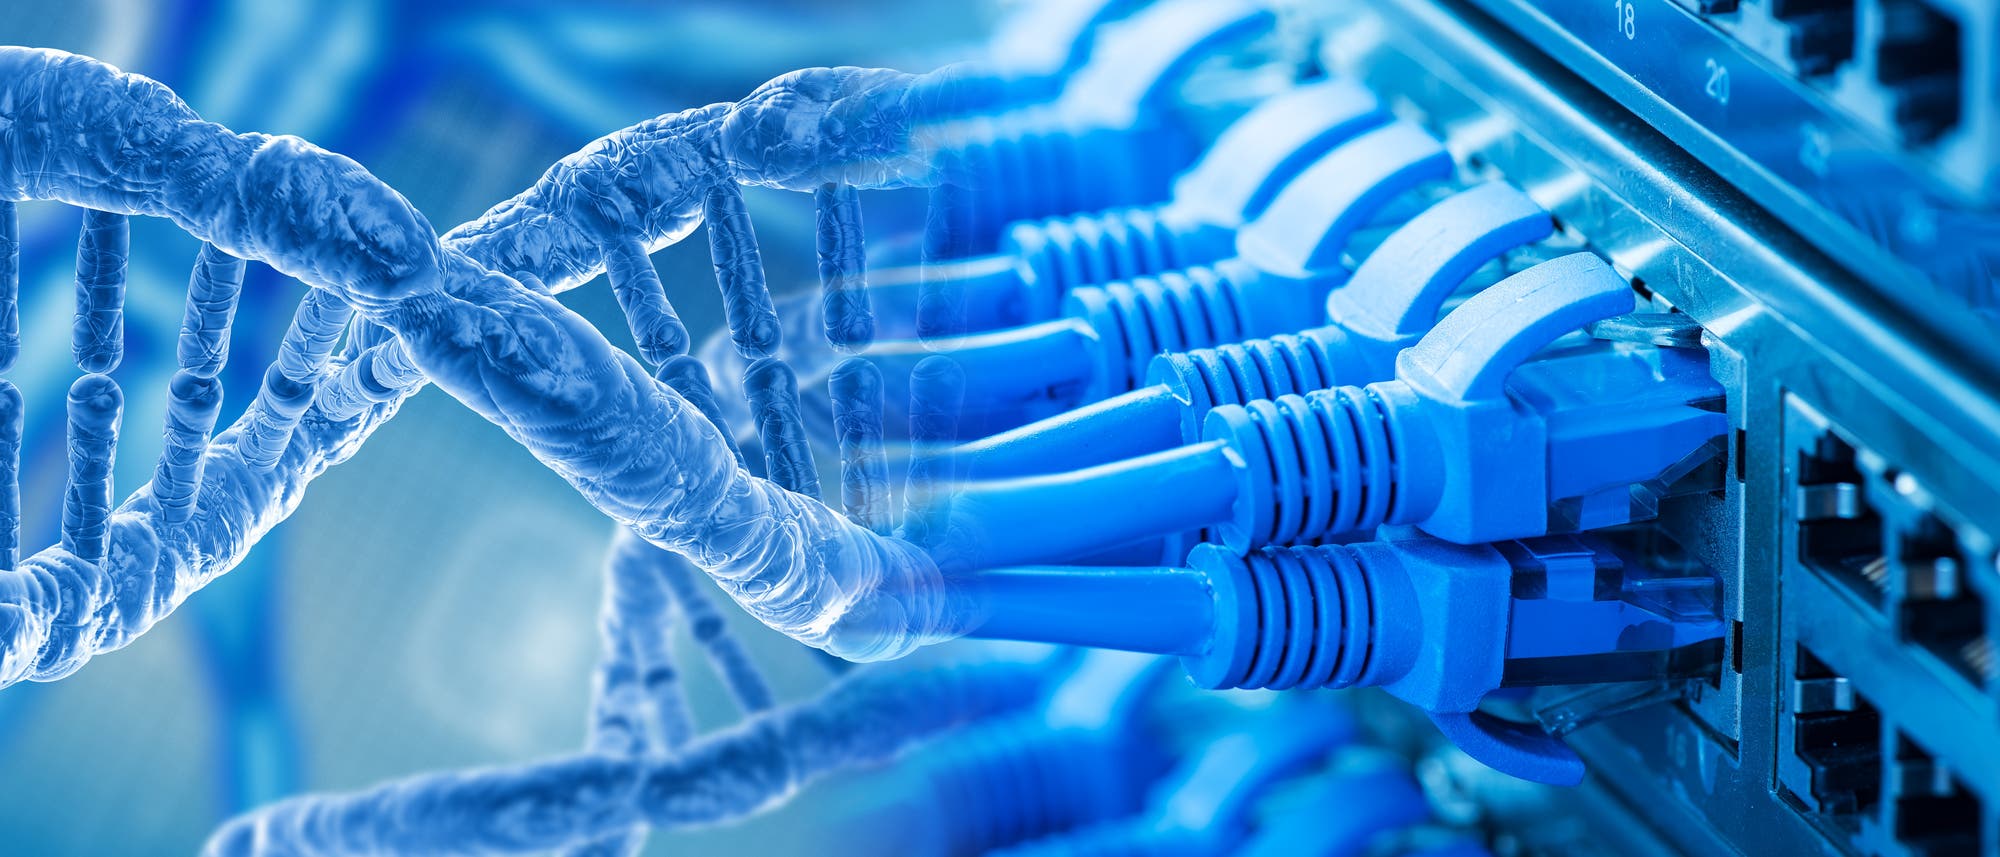 Ethernet-Kabel gehen über in einen stilisierten DNA-Strang